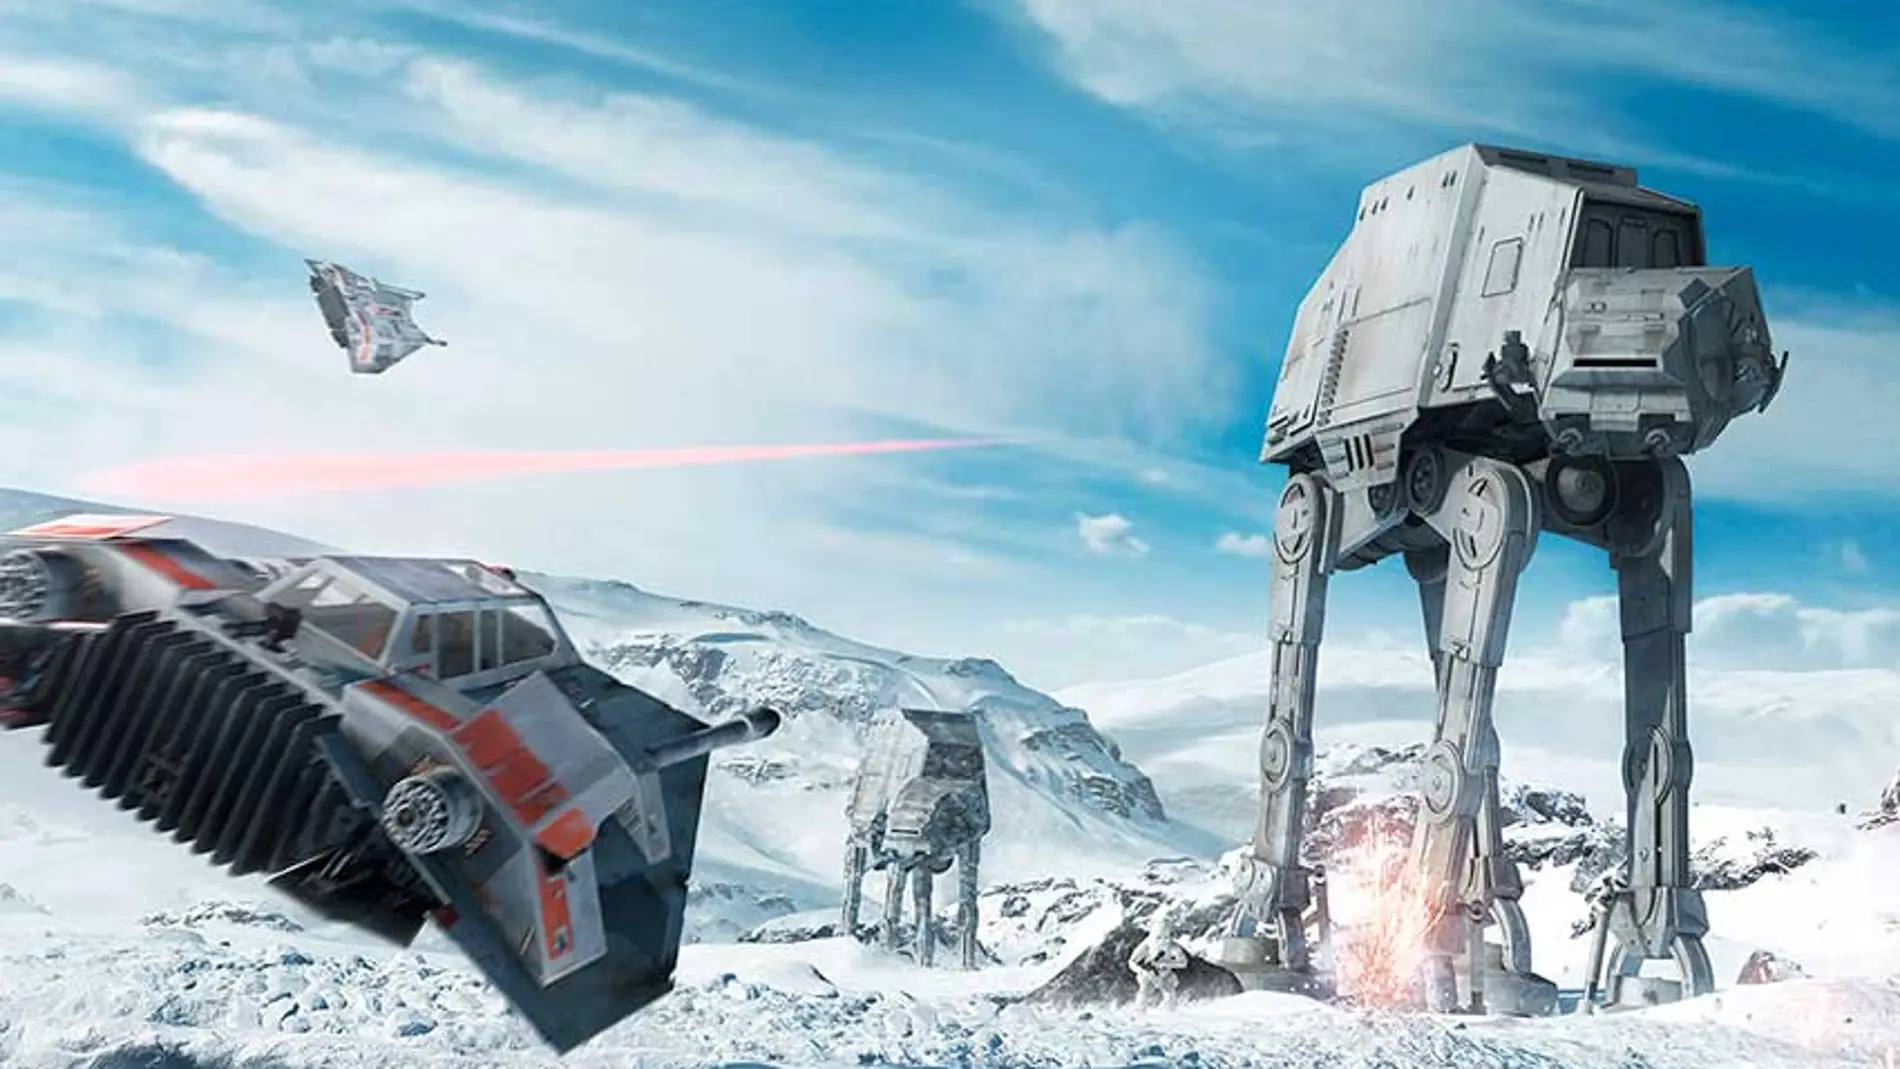 La beta Star Wars Battlefront incluirá modos cooperativos en línea y juego en solitario